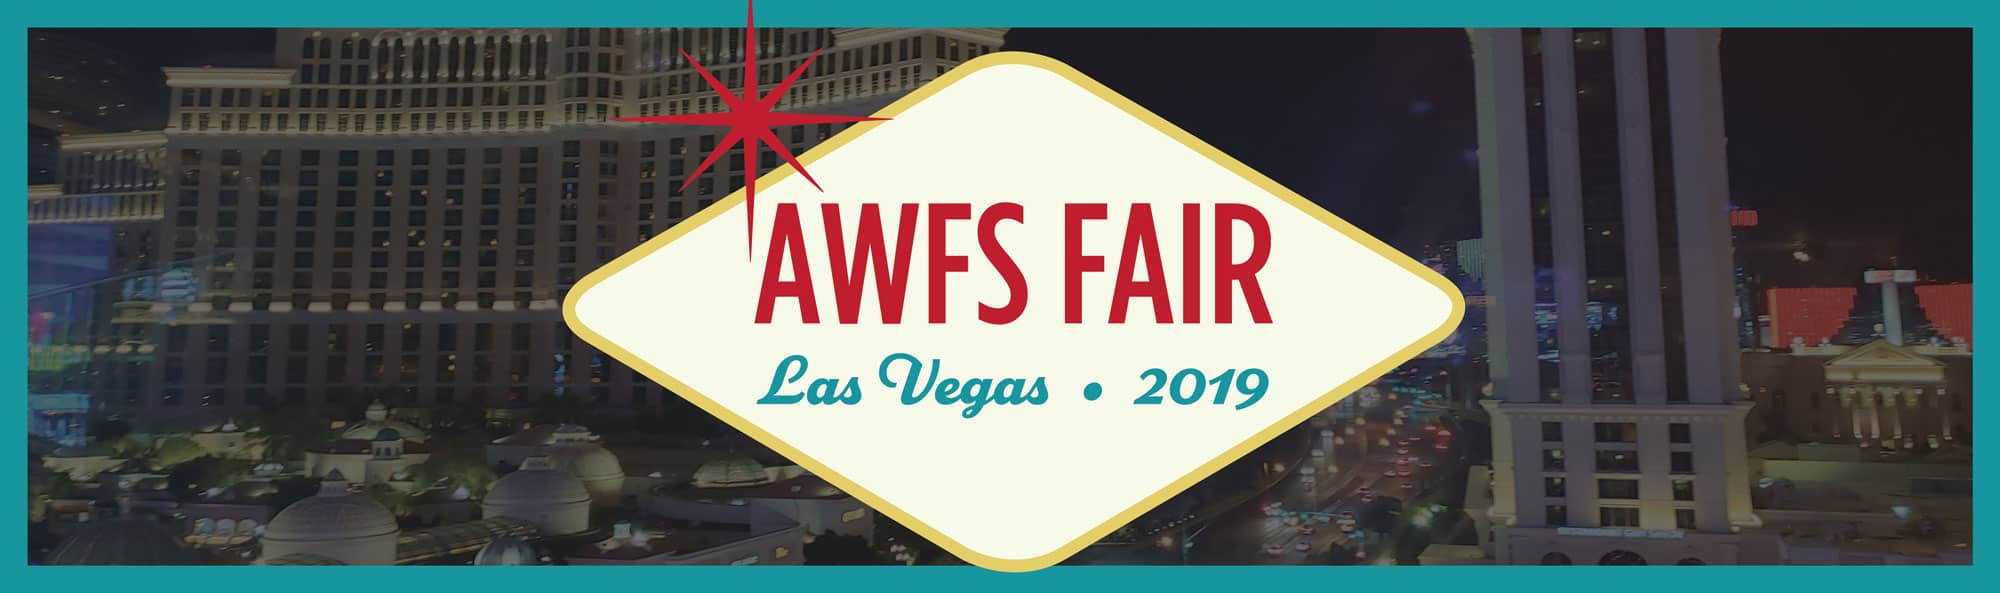 AWFS Fair Las Vegas 2019